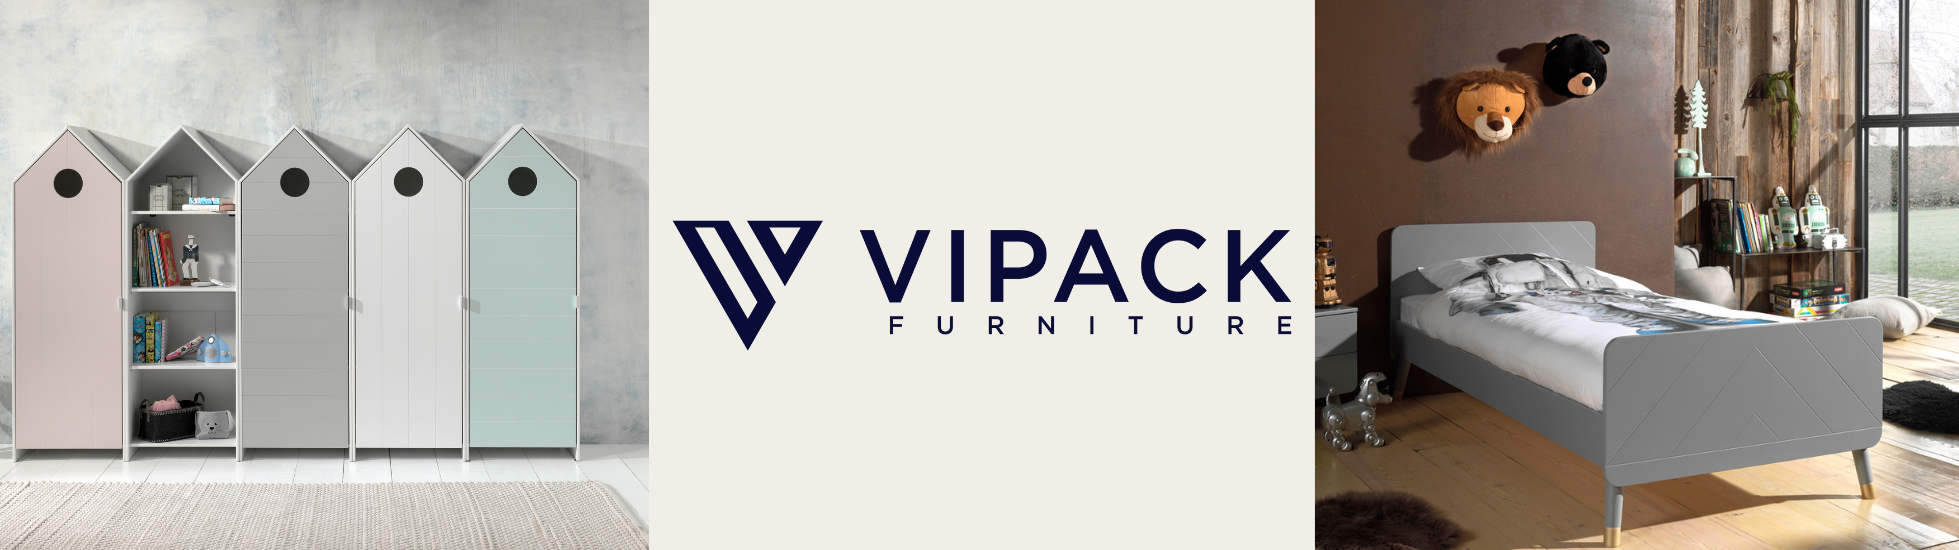 Mobilier Vipack : lit junior et mobilier de chambre à prix doux 